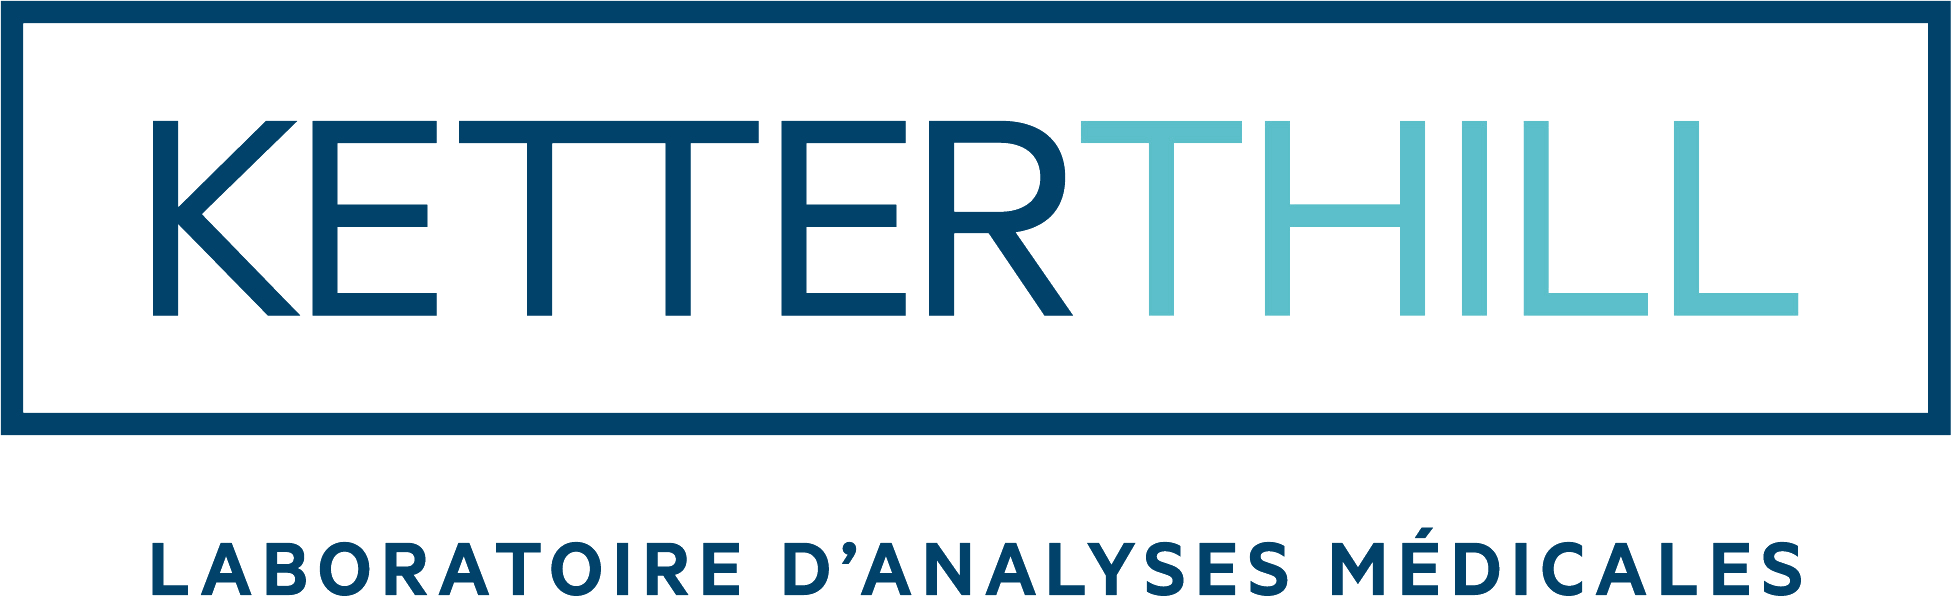 Ketterthill logo